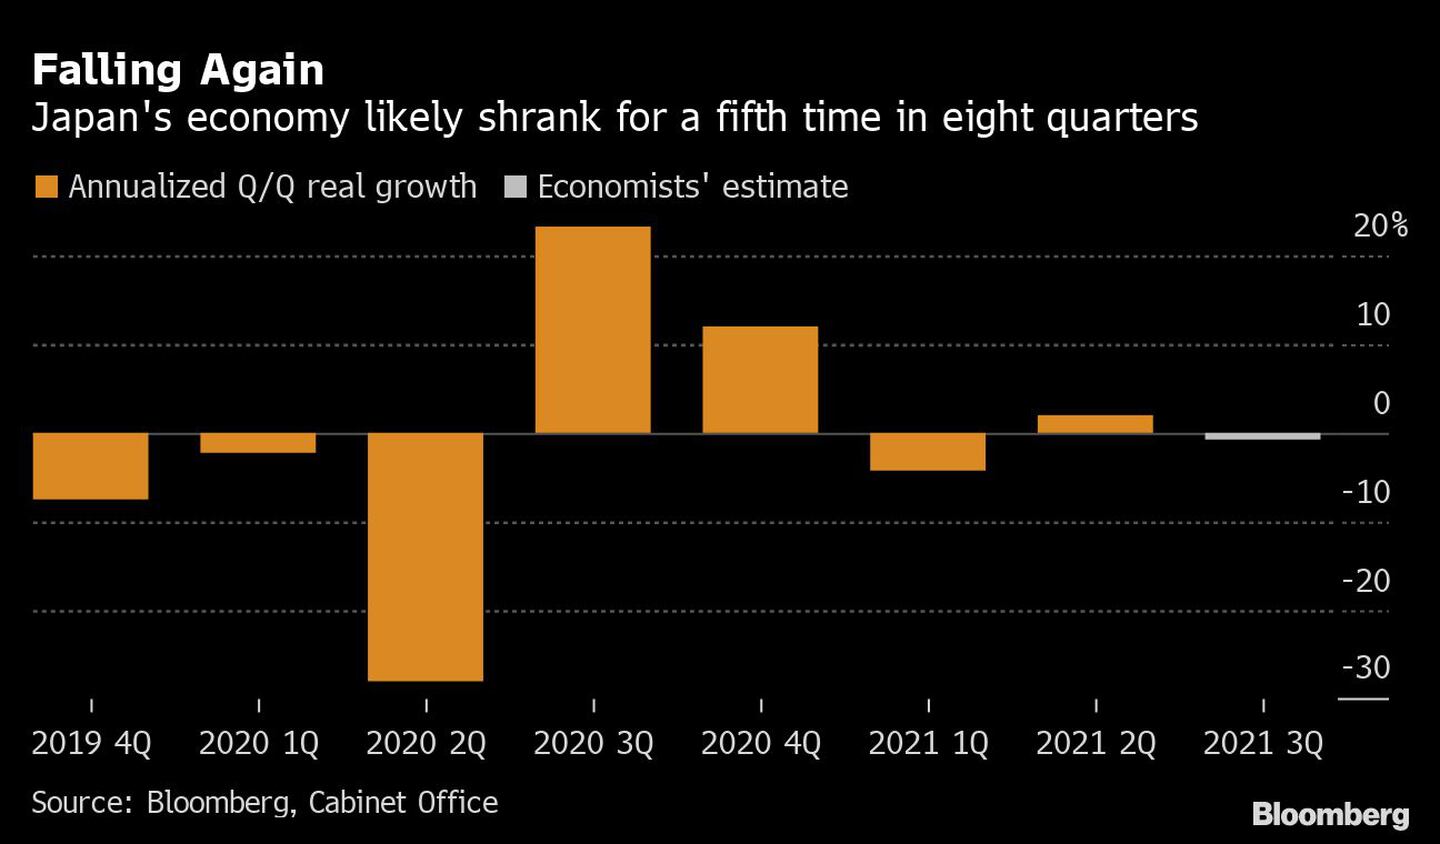 Cayendo de nuevo: La economía japonesa se contrae por quinta vez en ocho trimestres.dfd